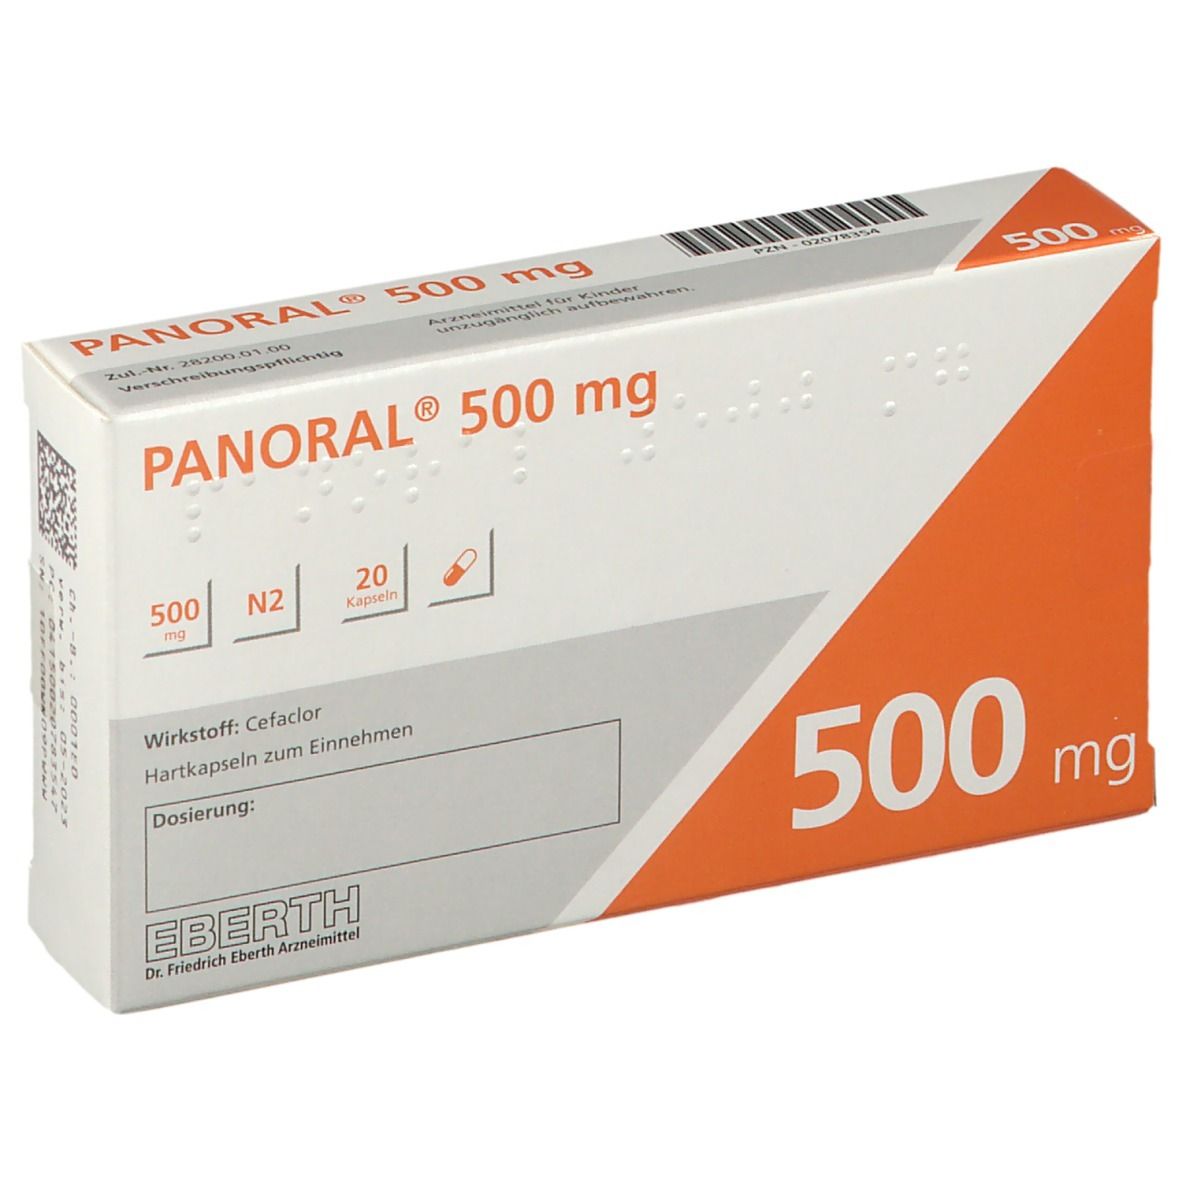 Panoral® 500 mg